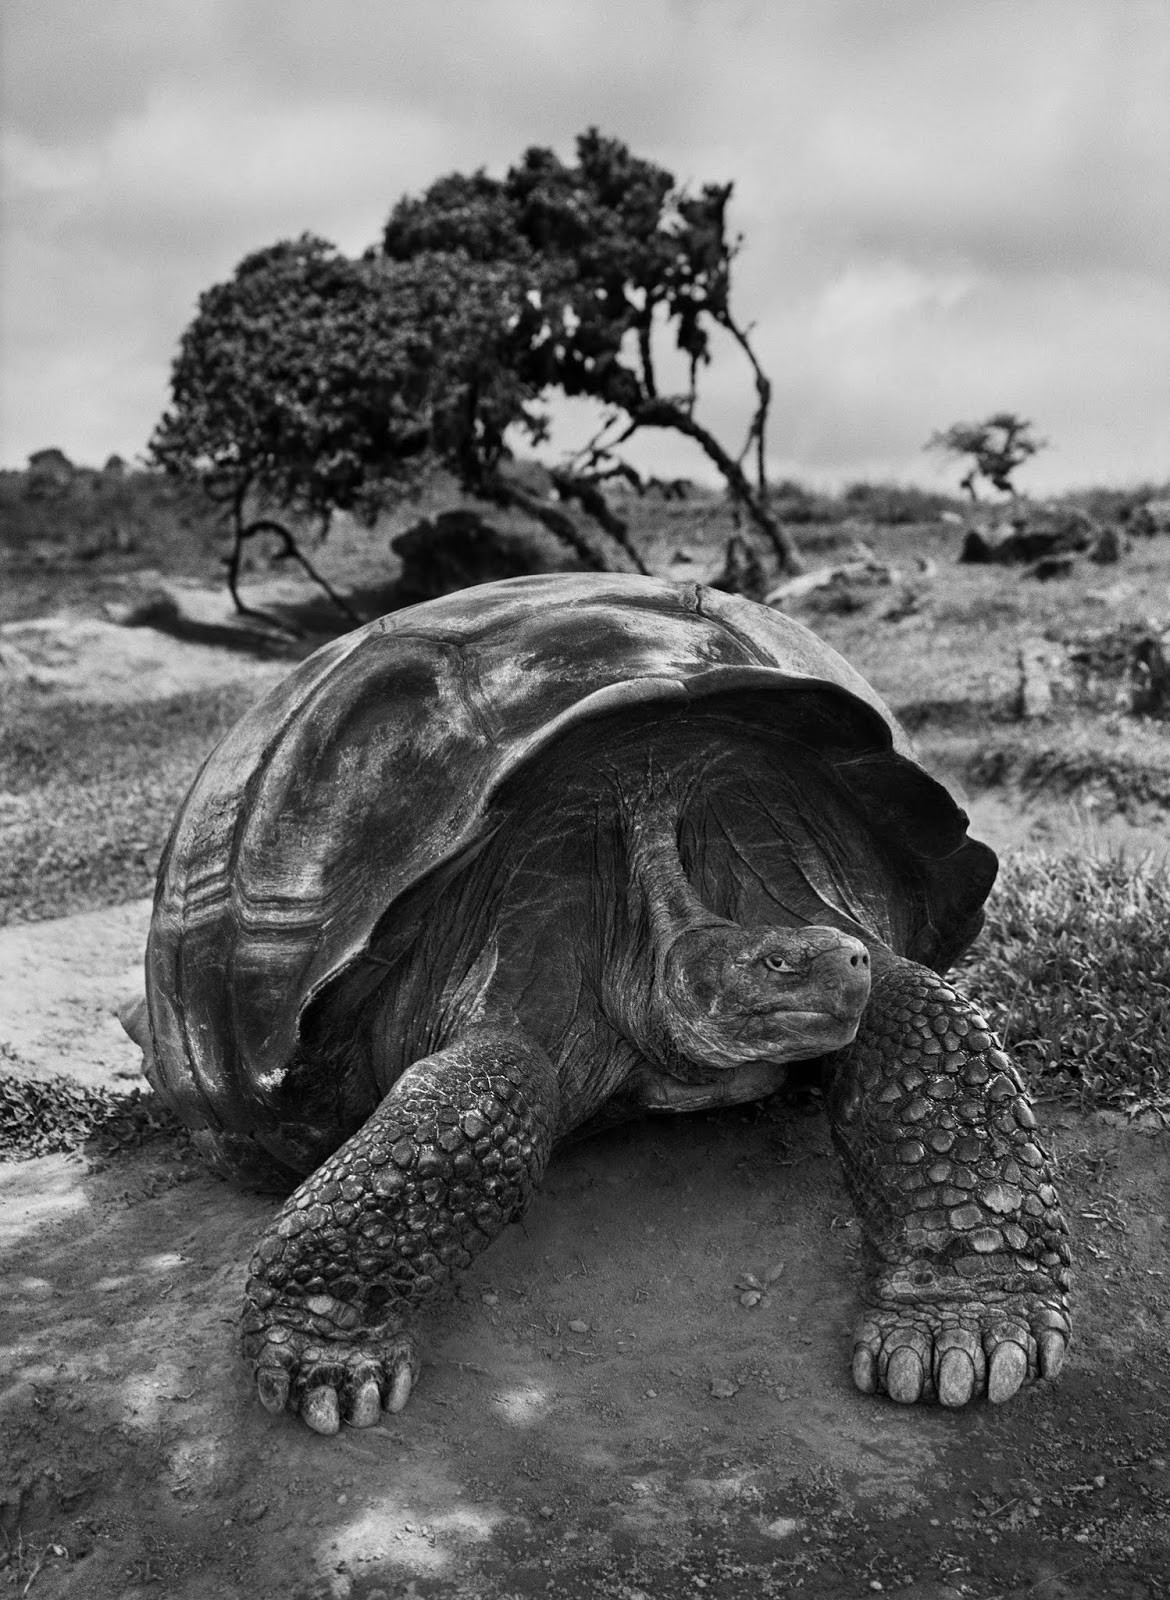 Черепаха, Галапагосские острова, Эквадор, 2004. Автор Себастьян Сальгадо